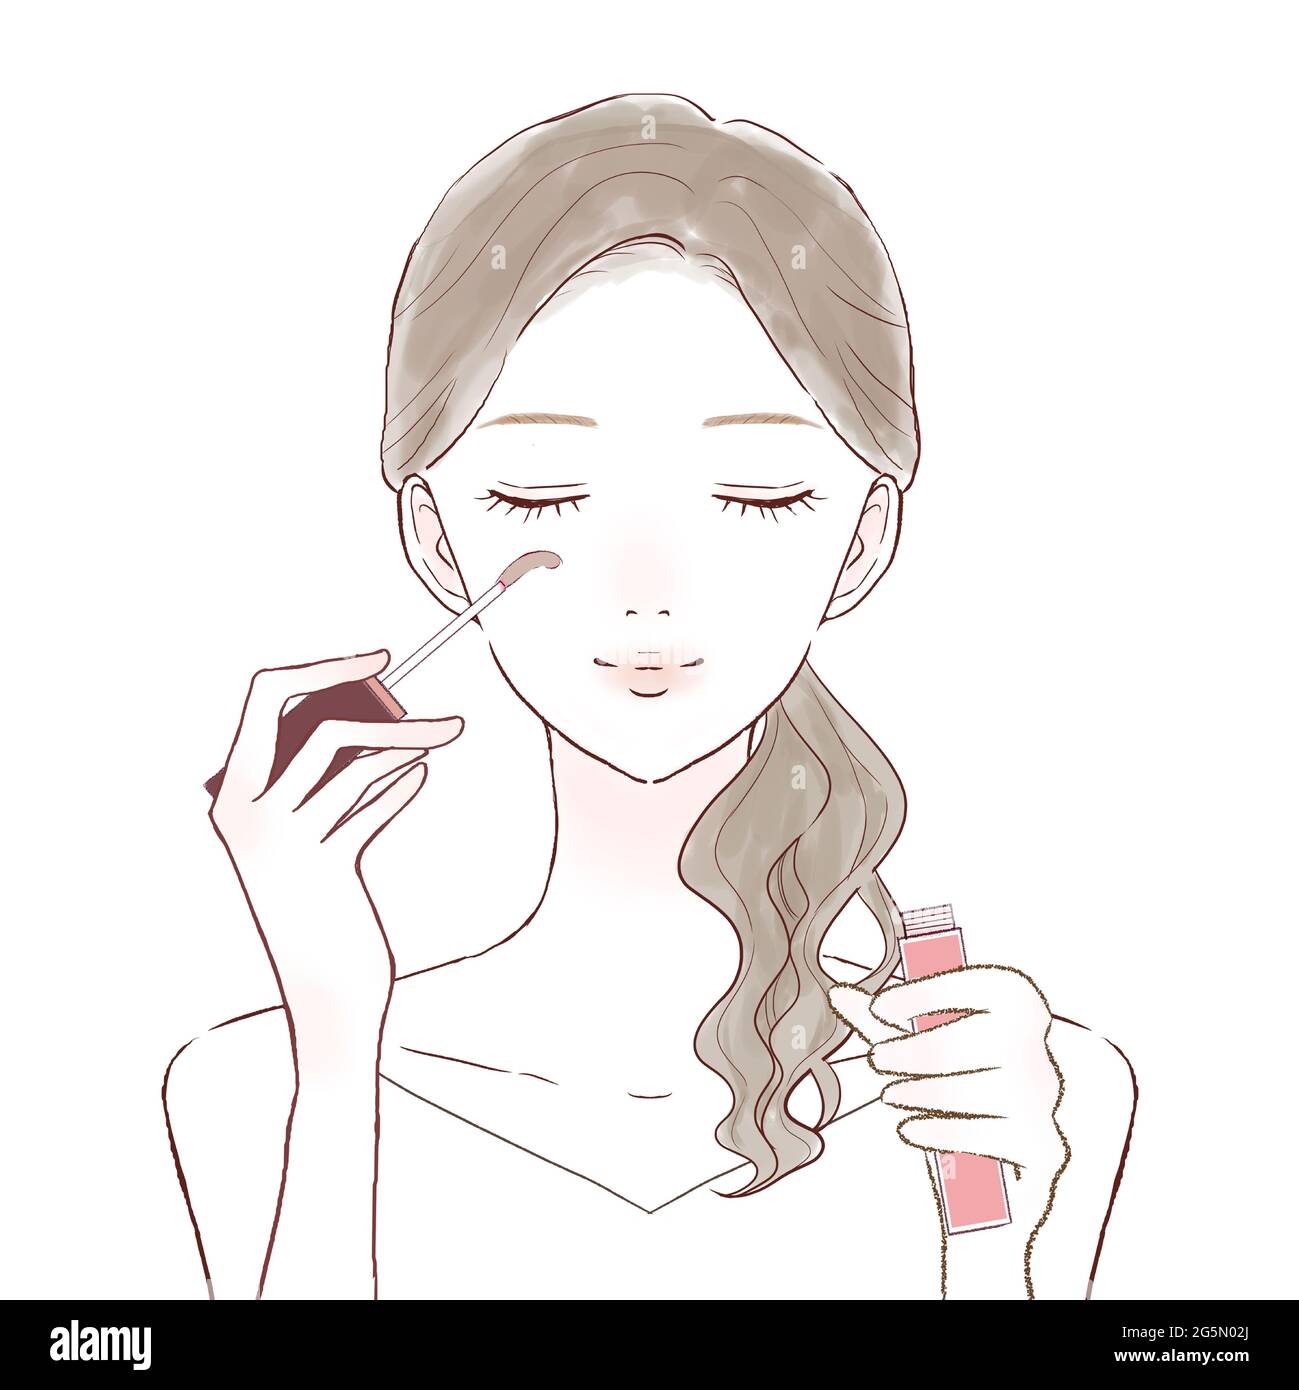 Eine Frau, die aufwächst, indem sie Wimpern-Serum auf ihre Wimpern aufgibt. Auf weißem Hintergrund. Stockfoto